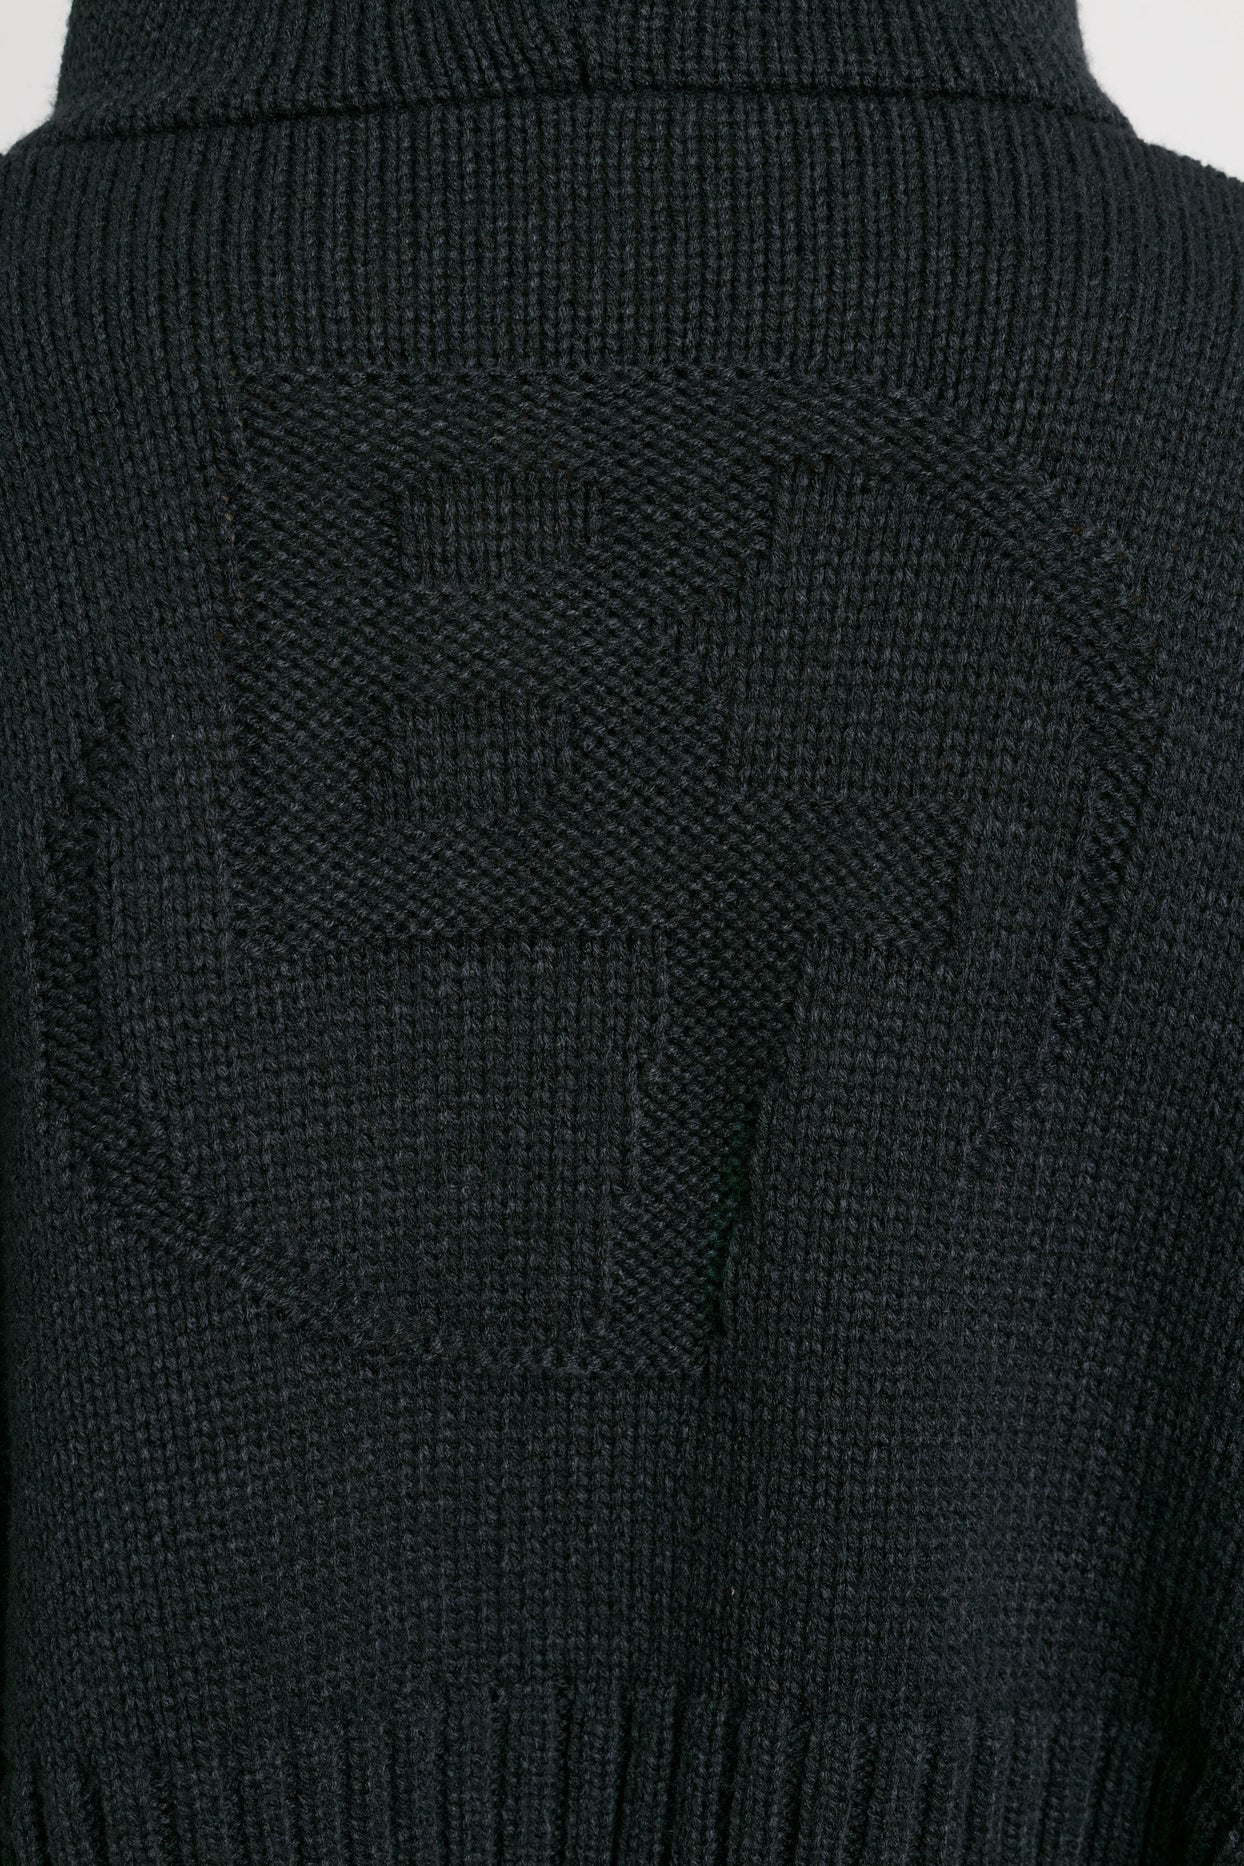 Sudadera con capucha corta de punto grueso con cremallera en negro